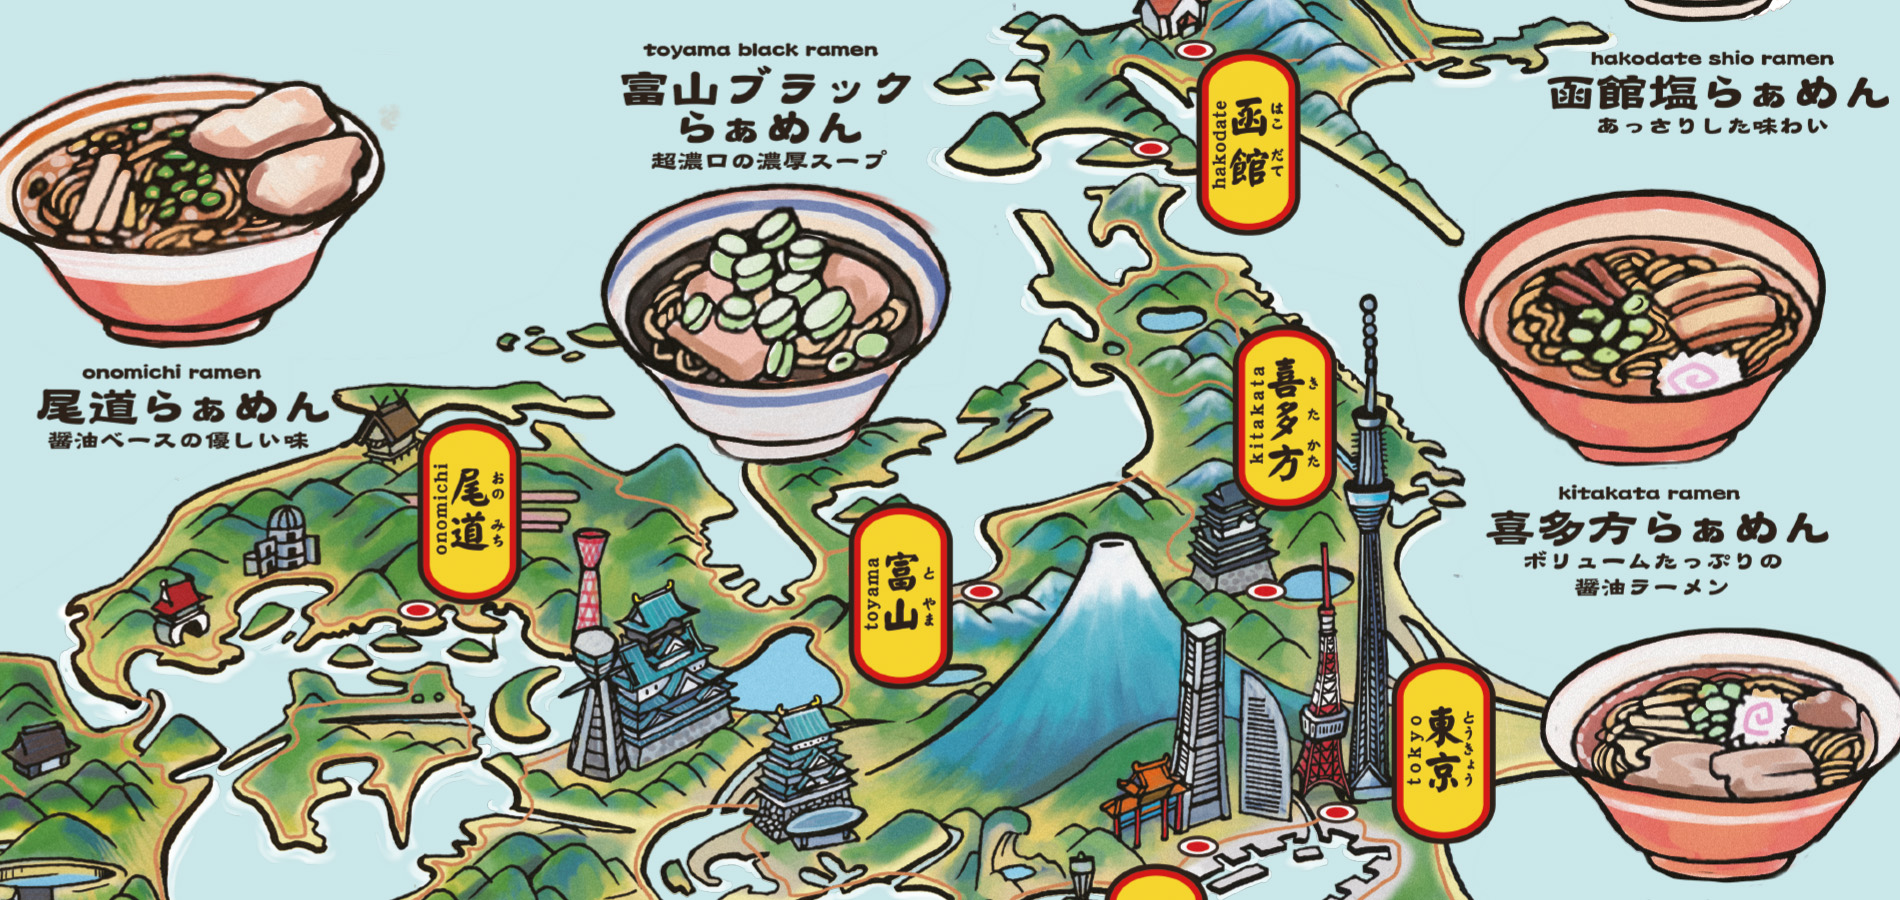 A stylised map of Japan showing regional ramen varieties